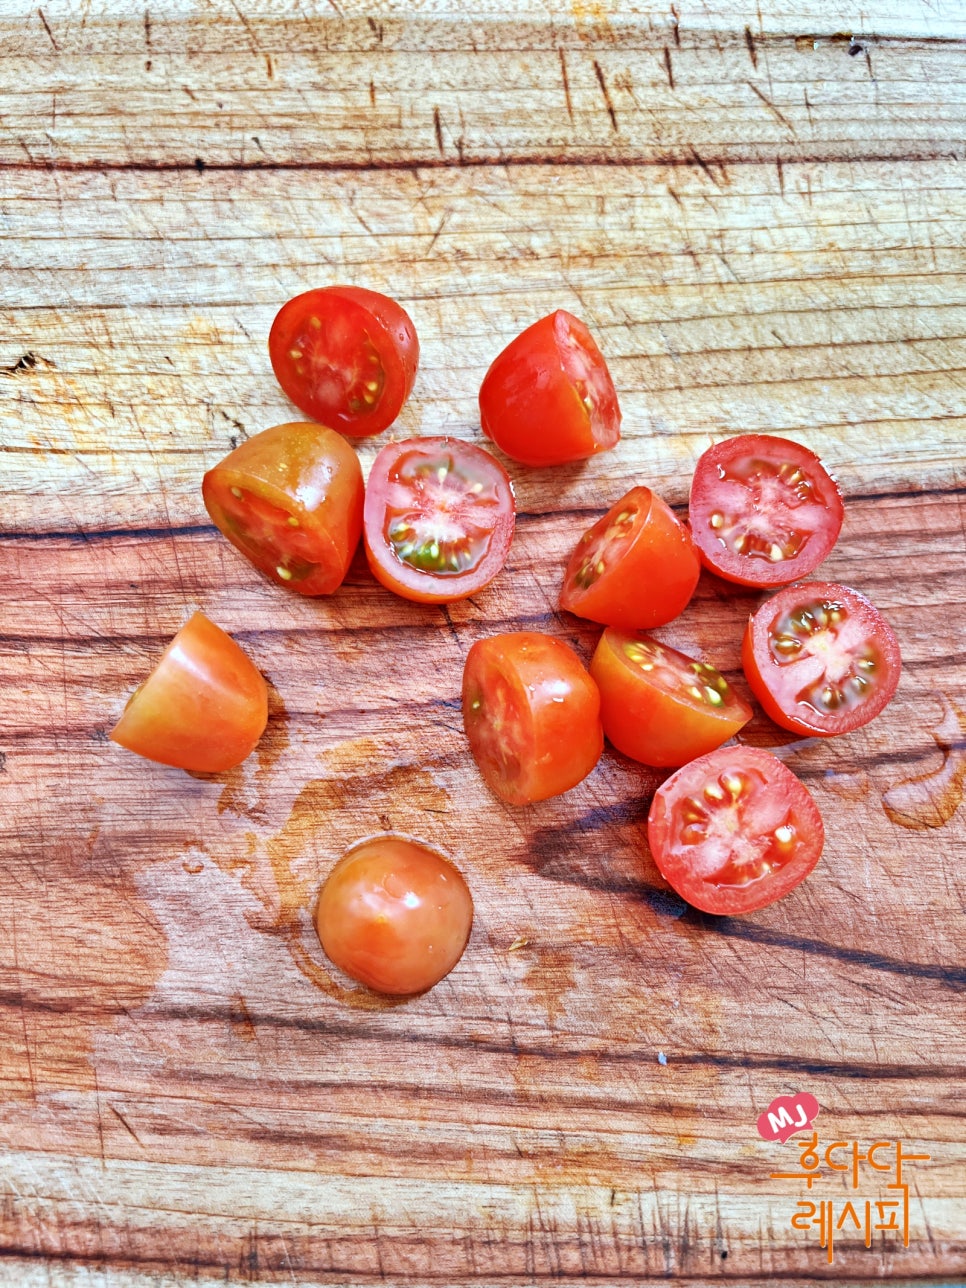 방울 토마토 계란볶음 레시피 토달볶 다이어트 토달볶음